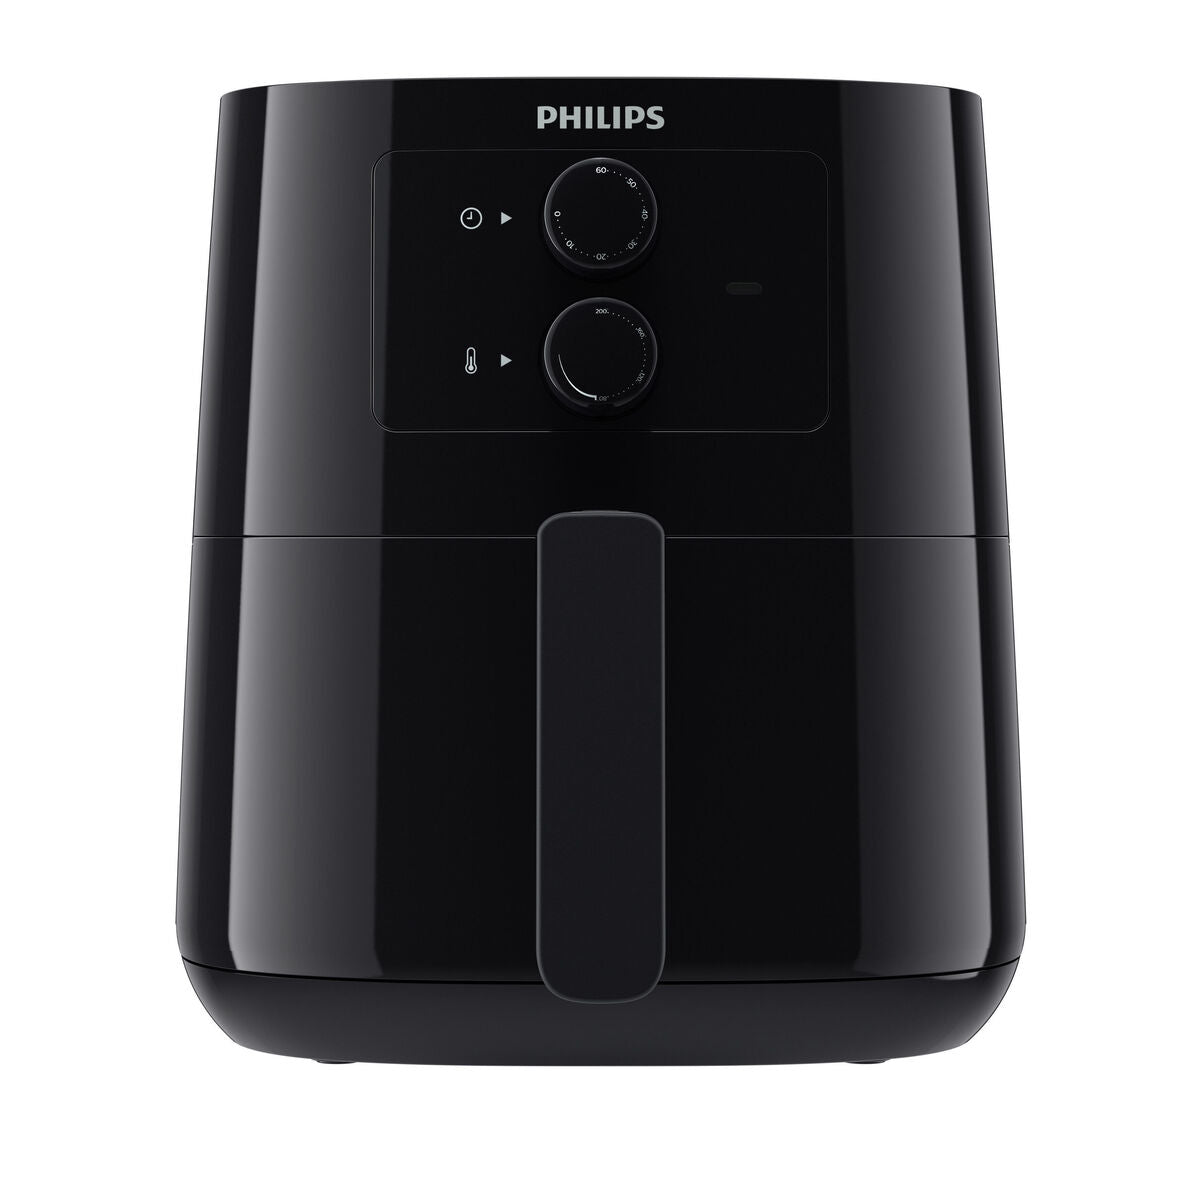 Heißluftfritteuse Philips HD9200/90 Schwarz 1400 W - CA International  